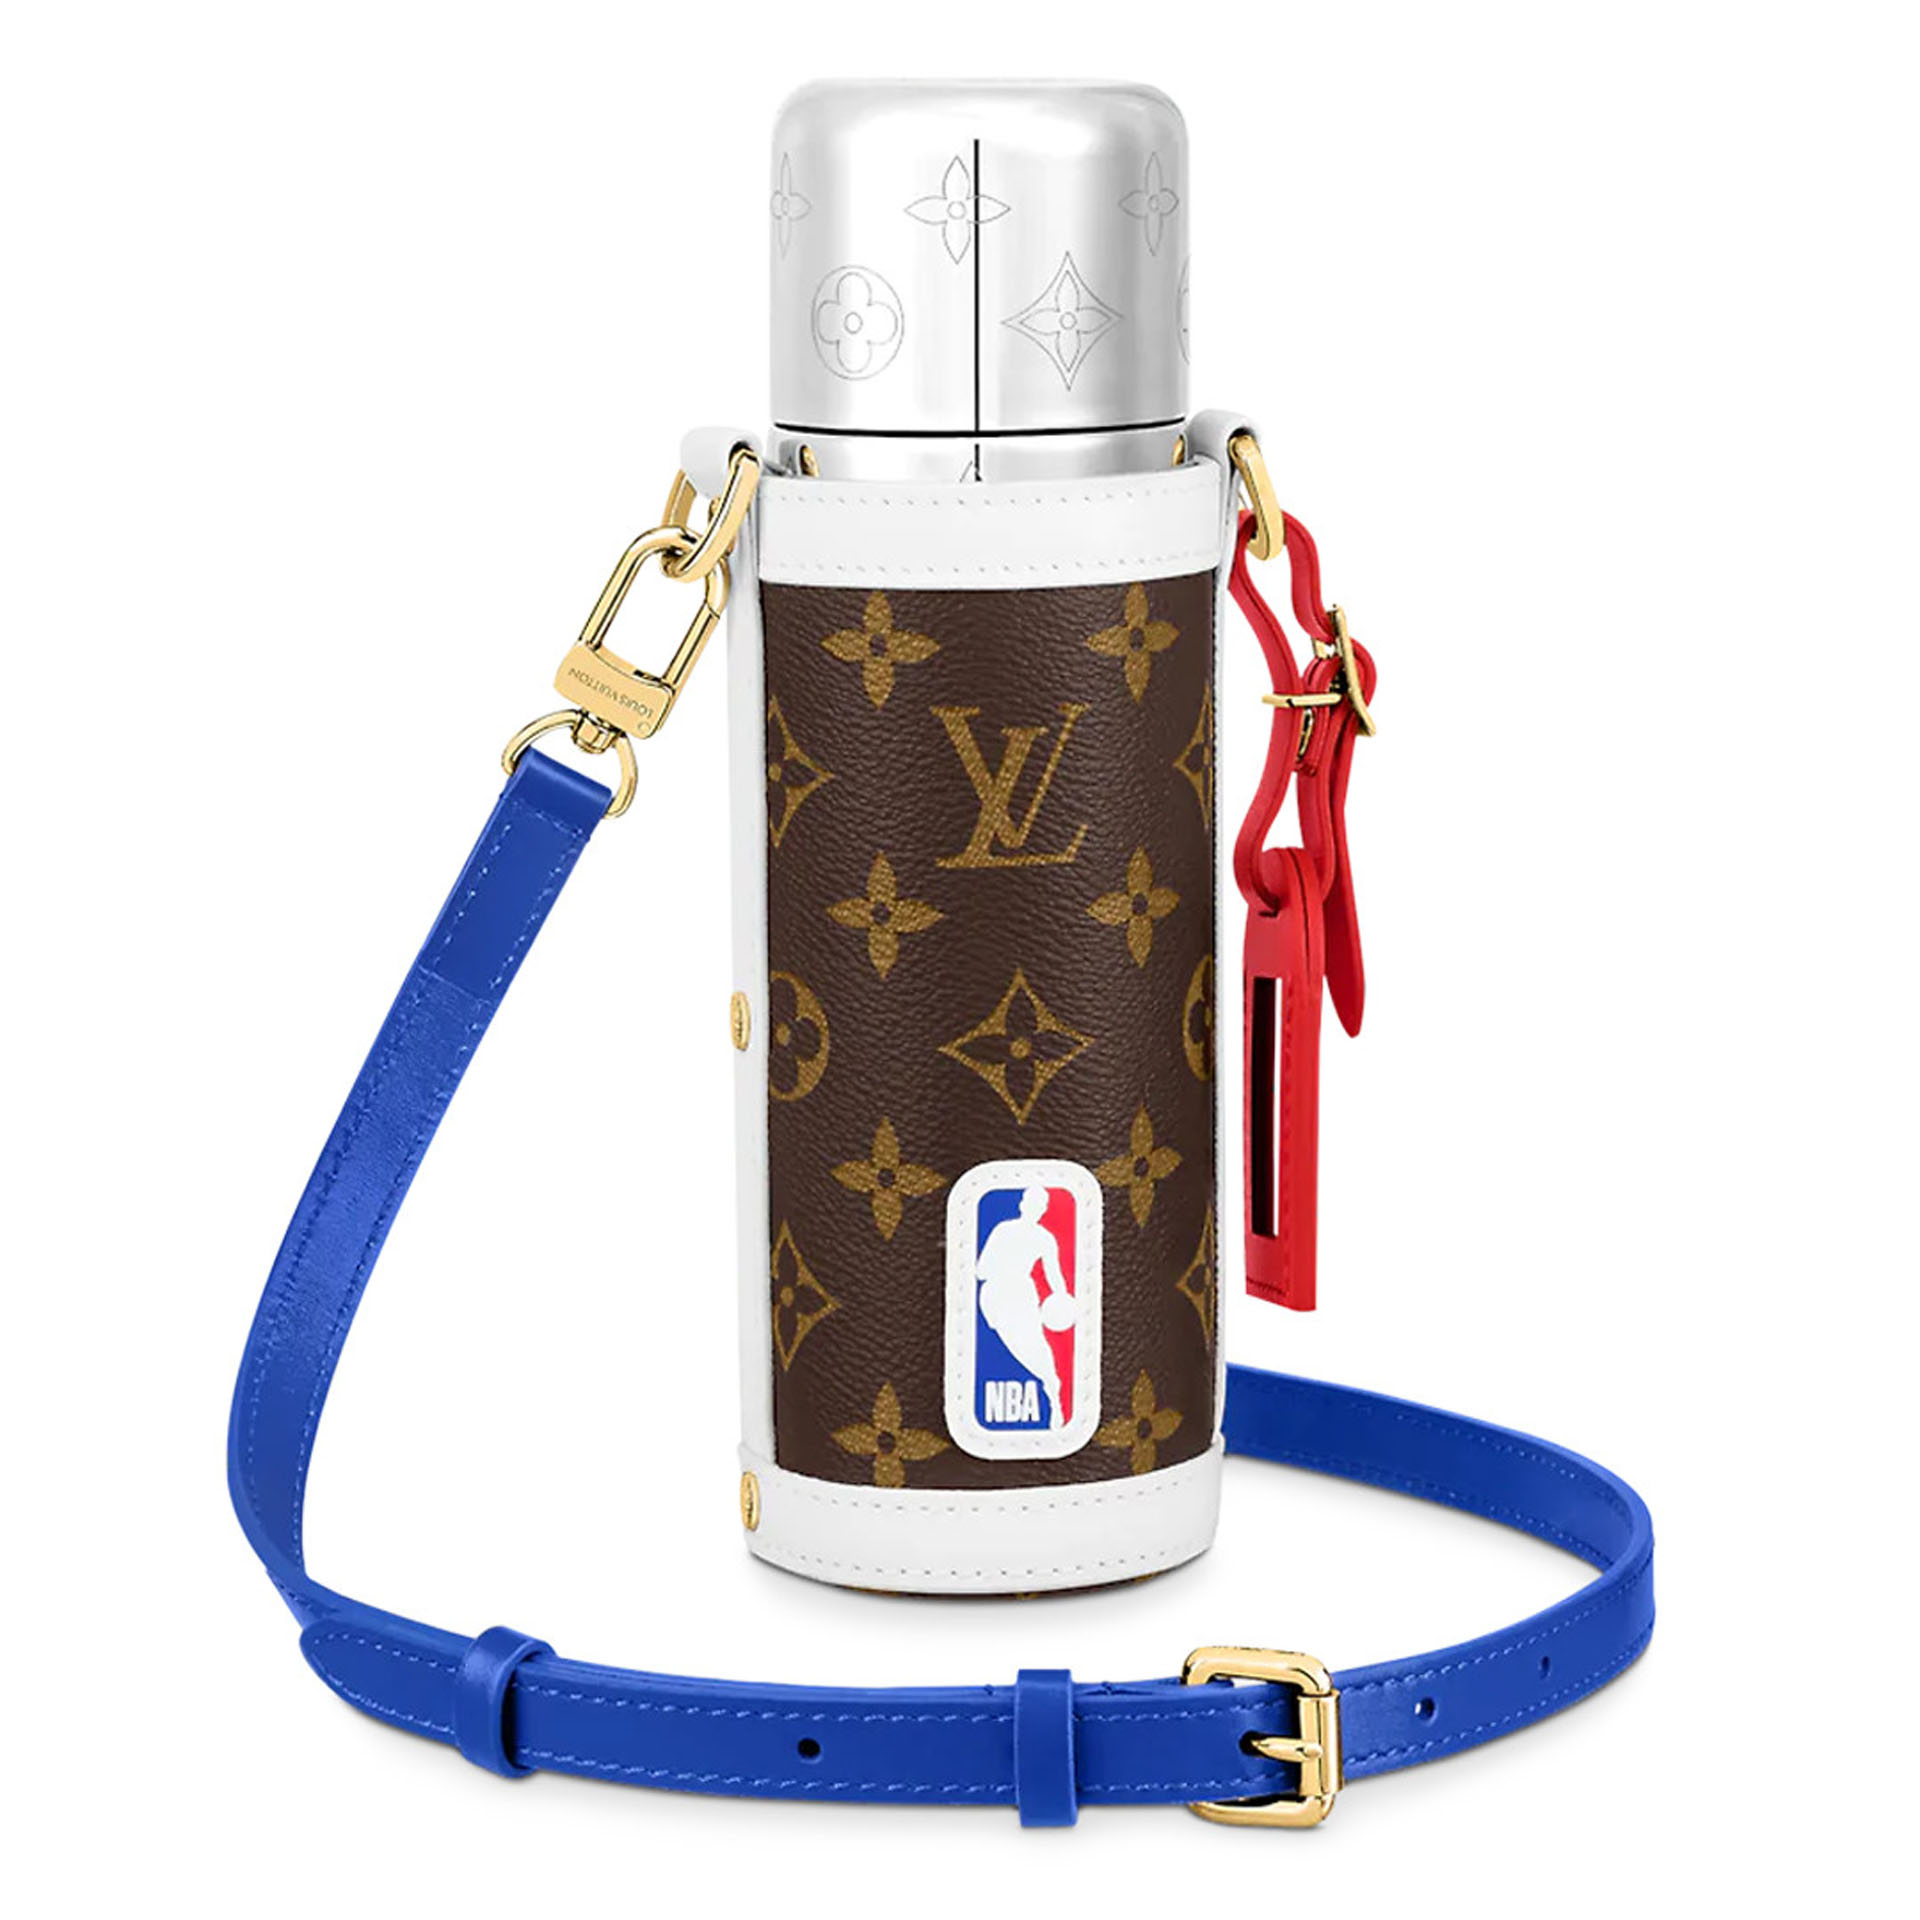 Louis Vuitton x NBA Mongoram Flask Holder